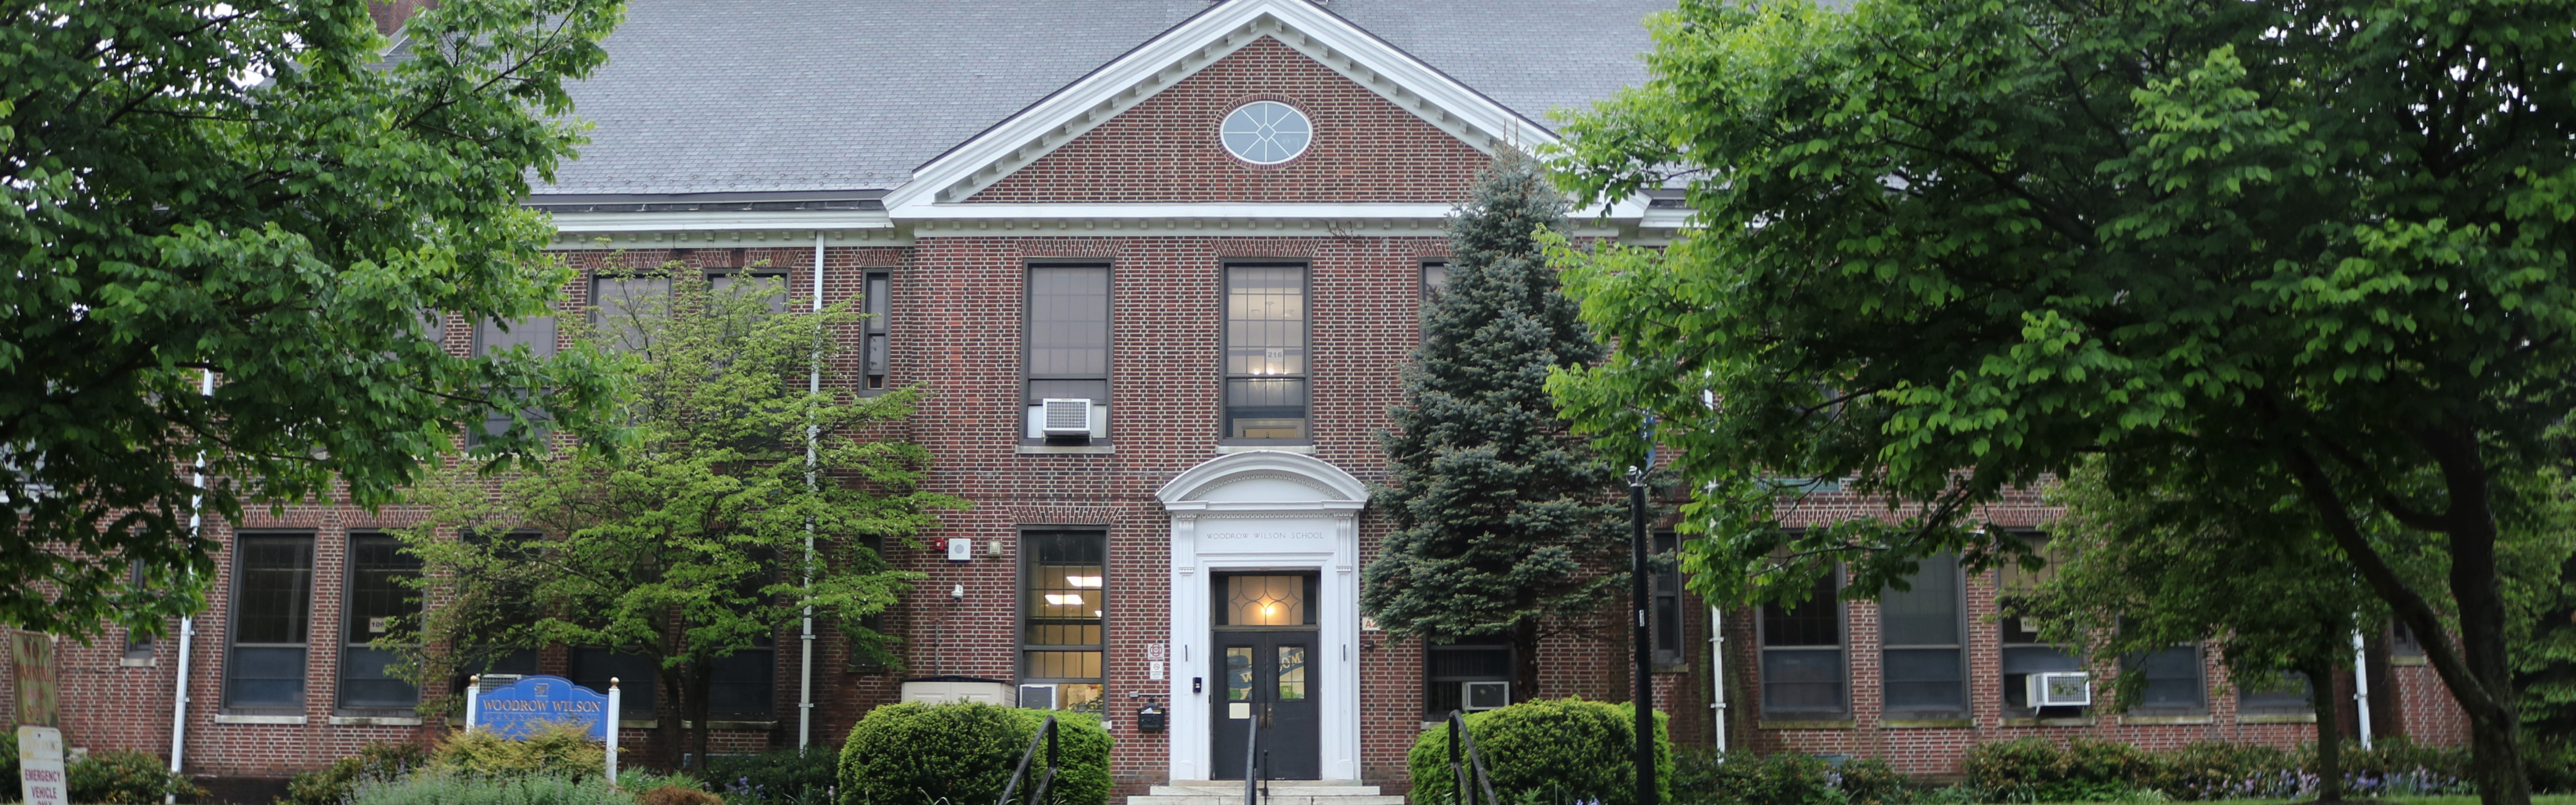 Exterior of Wilson School